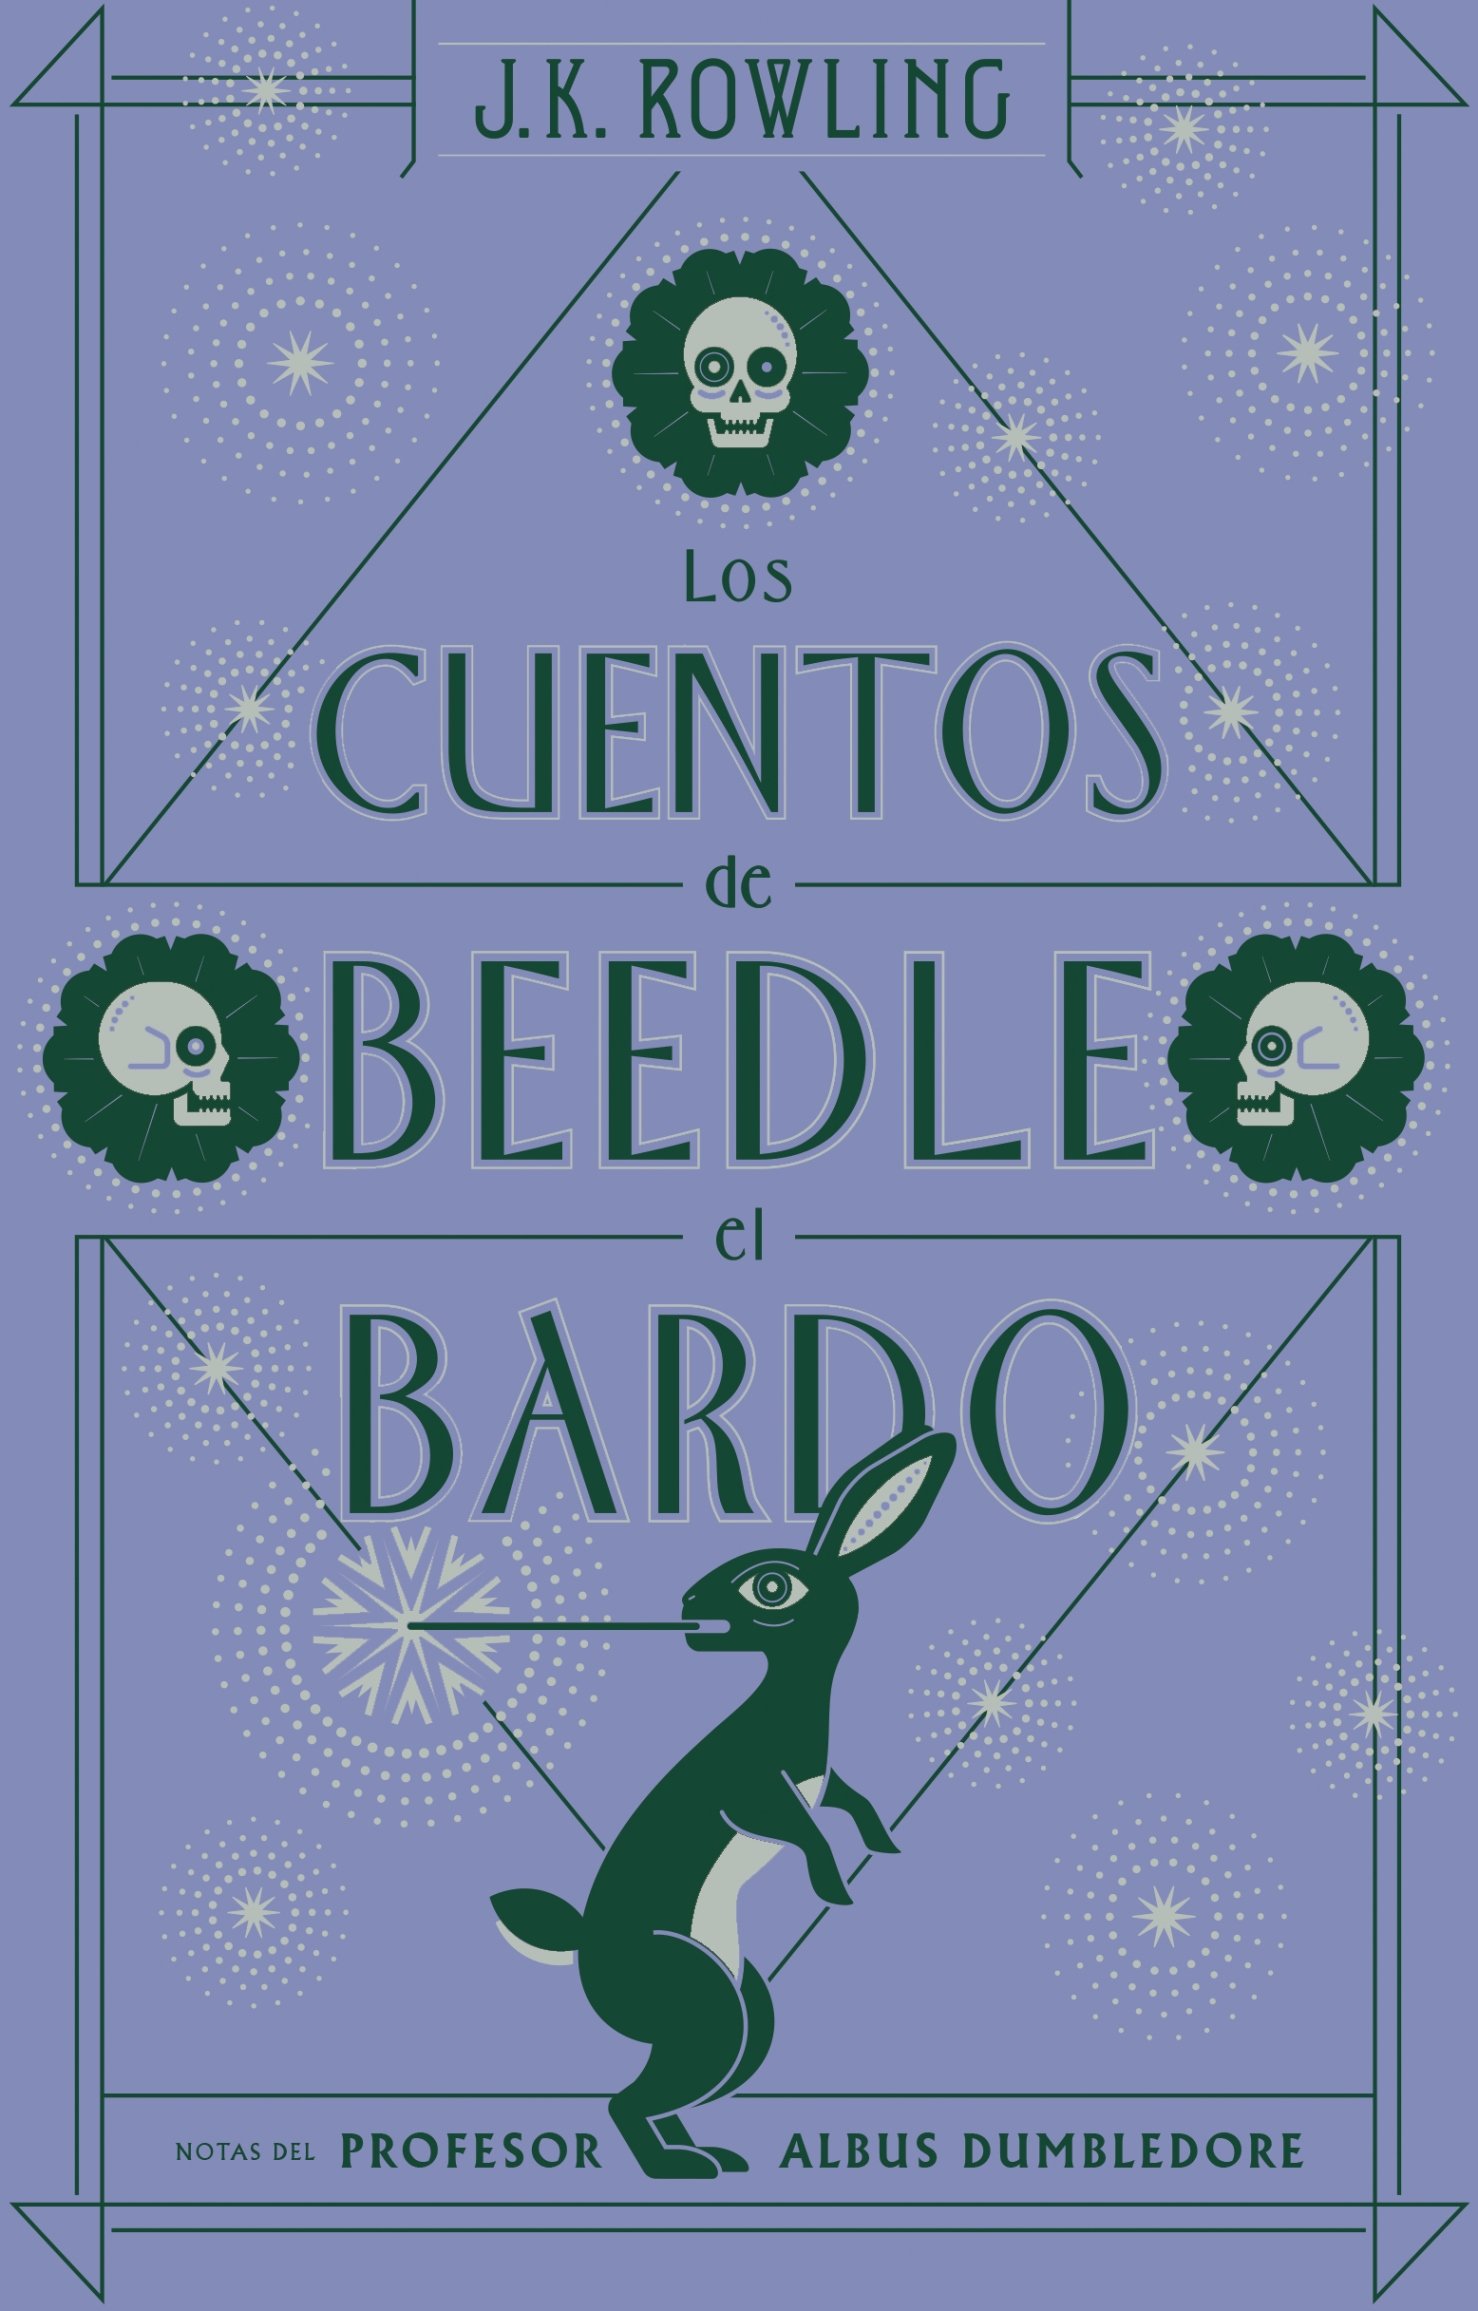 Estas son las nuevas portadas en español de libros anexos a "Harry Potter"